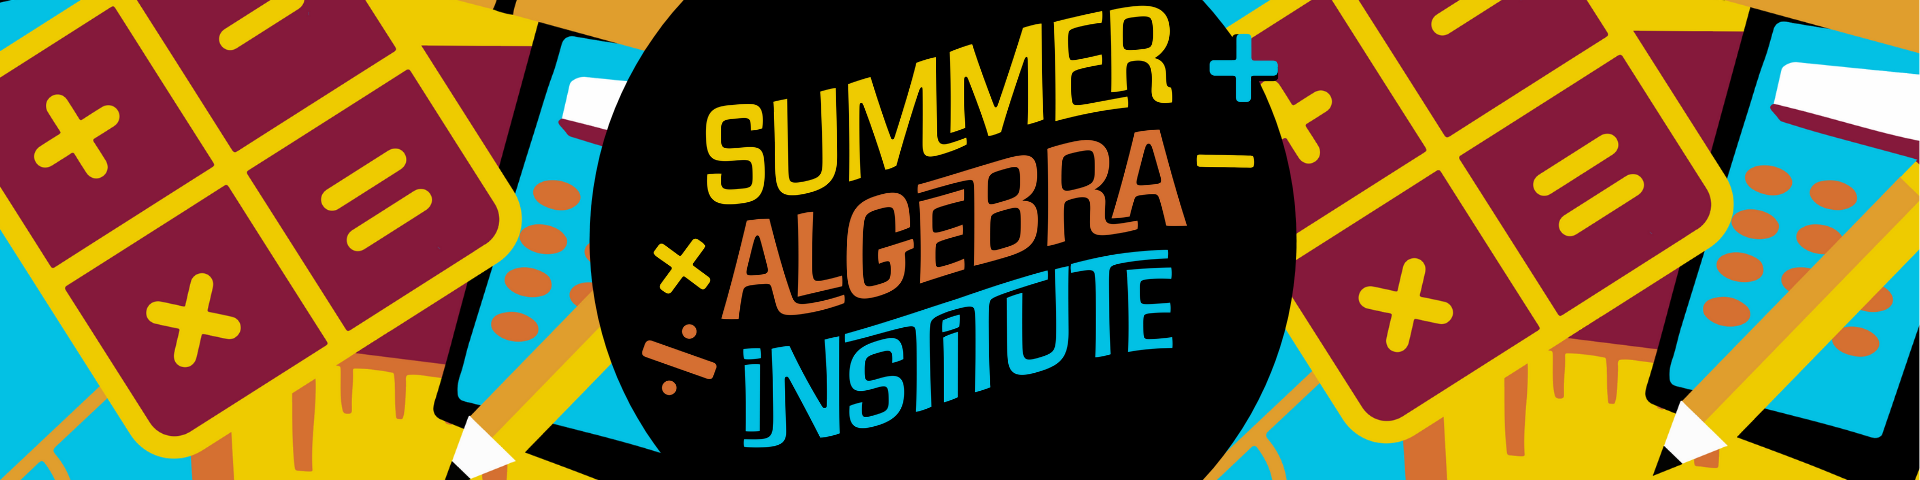 Summer Algebra Institute logo image